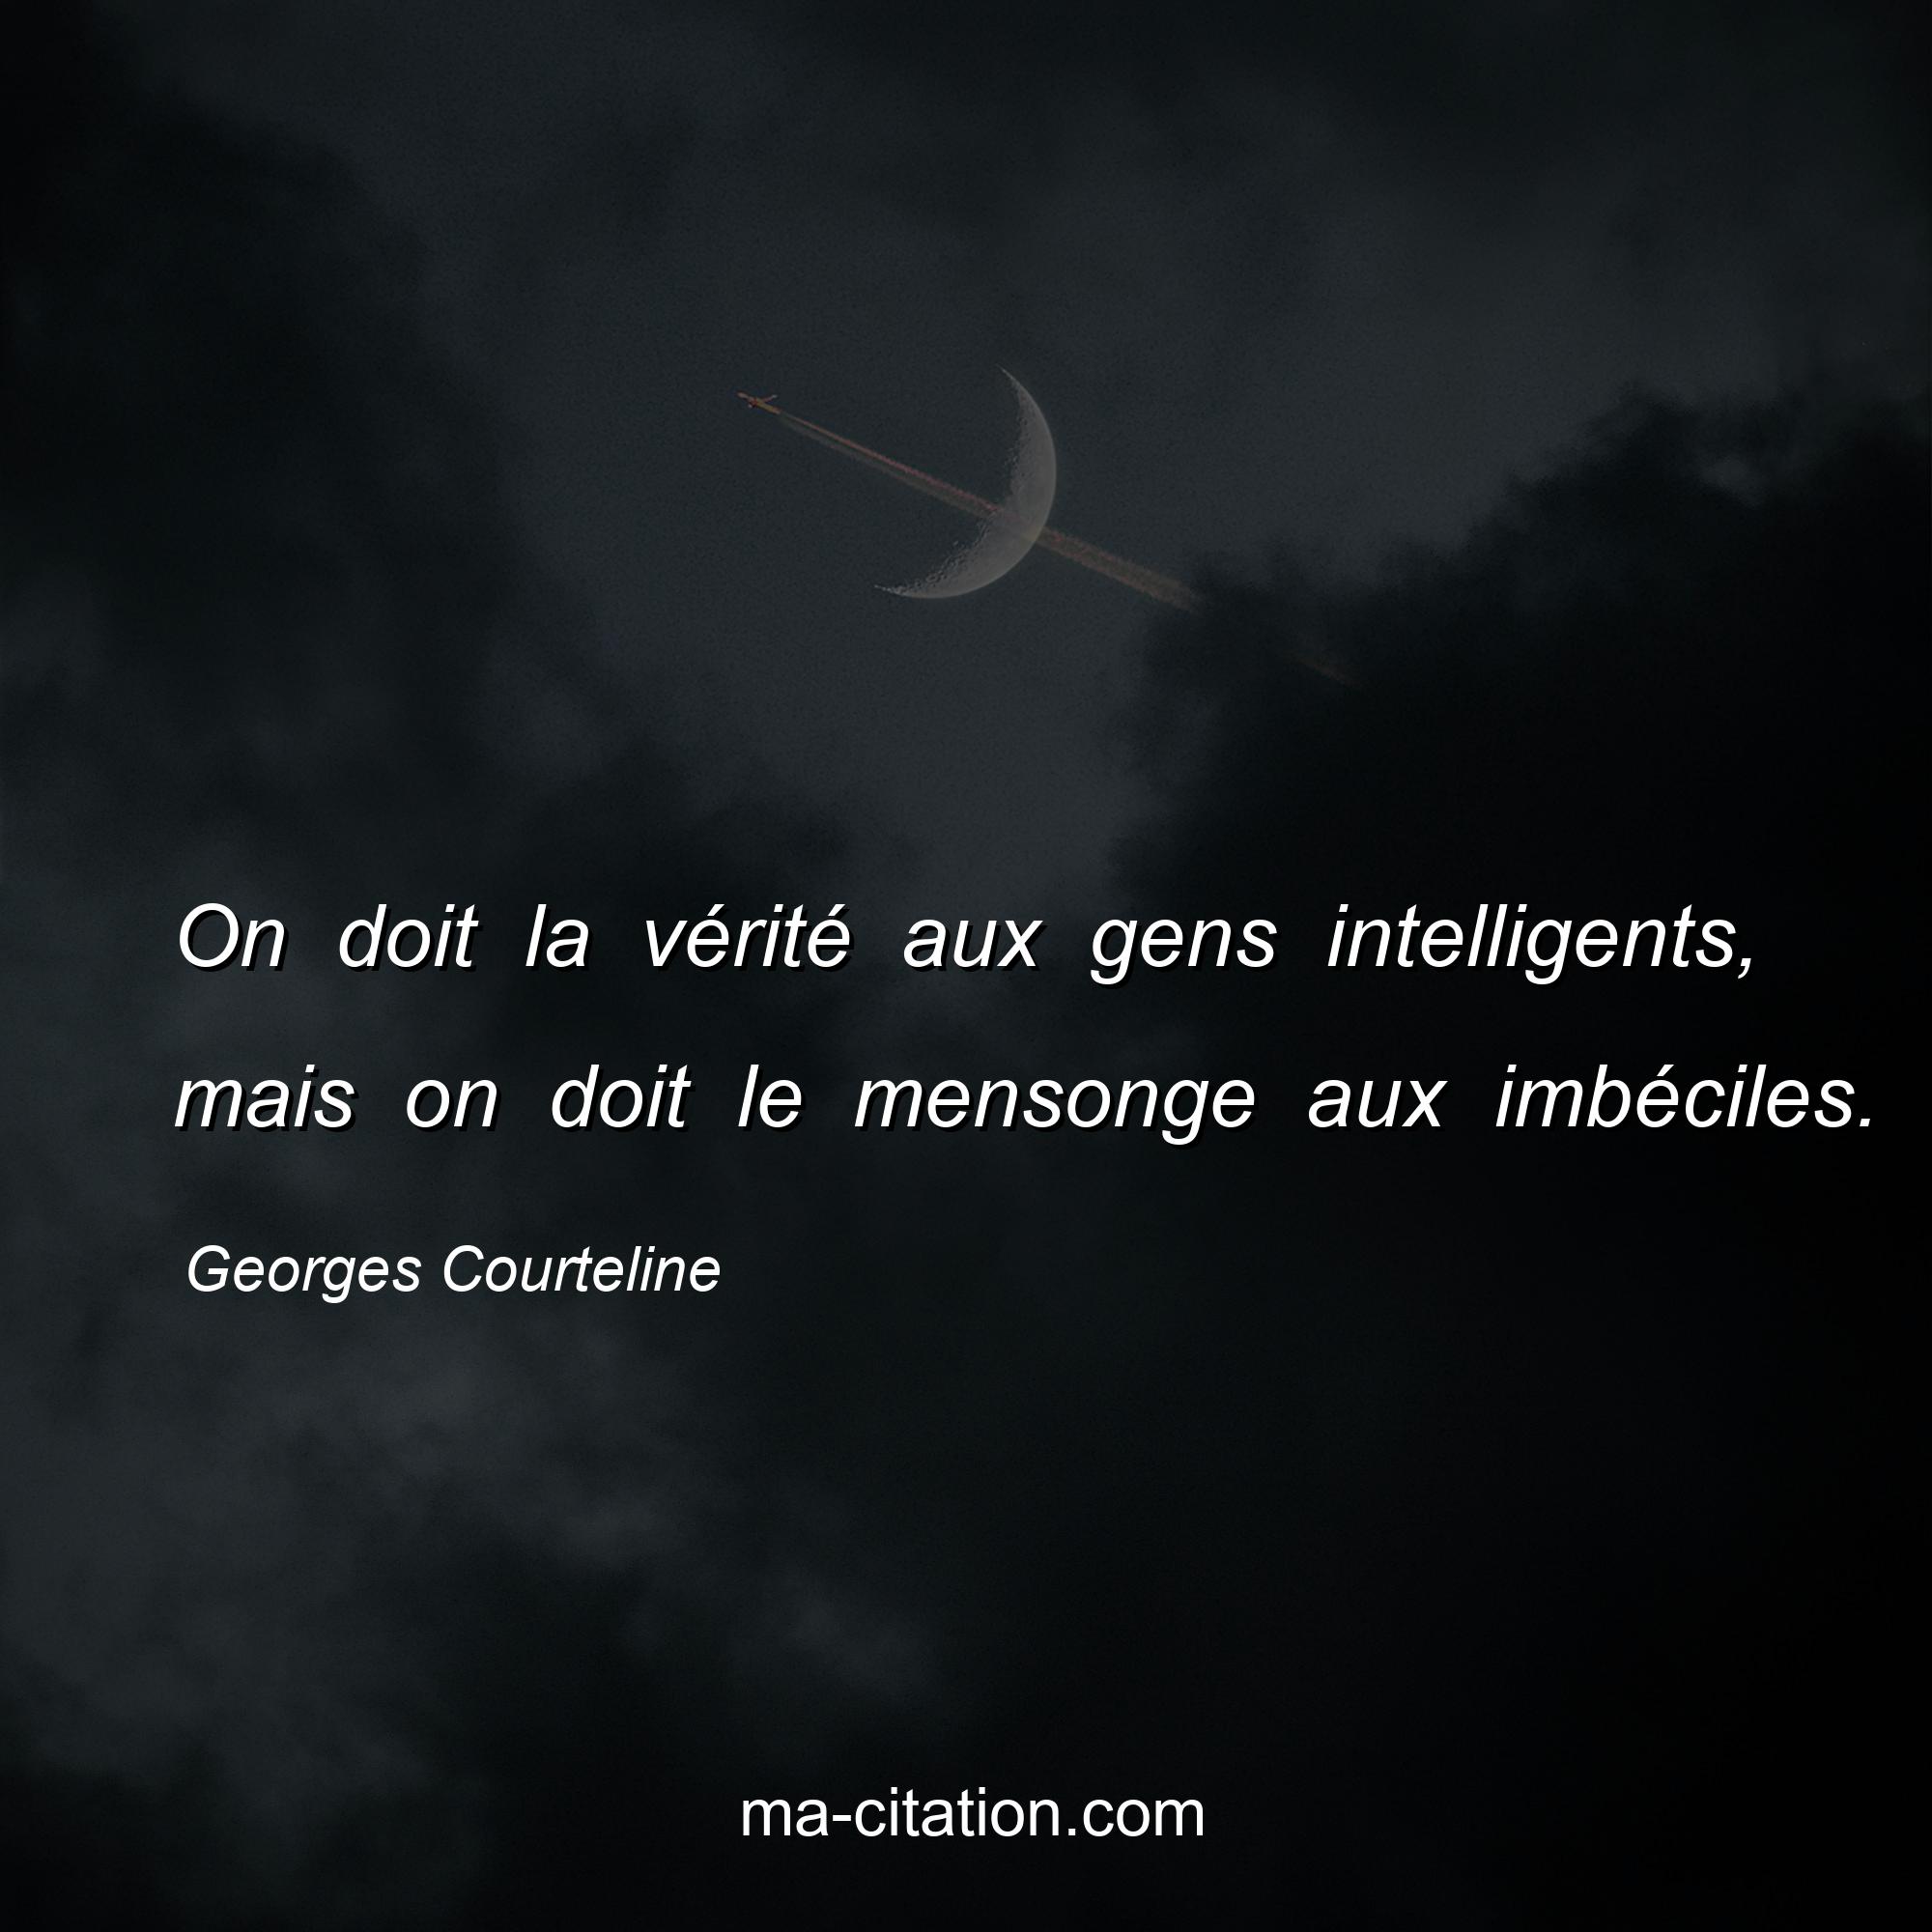 Georges Courteline : On doit la vérité aux gens intelligents, mais on doit le mensonge aux imbéciles.